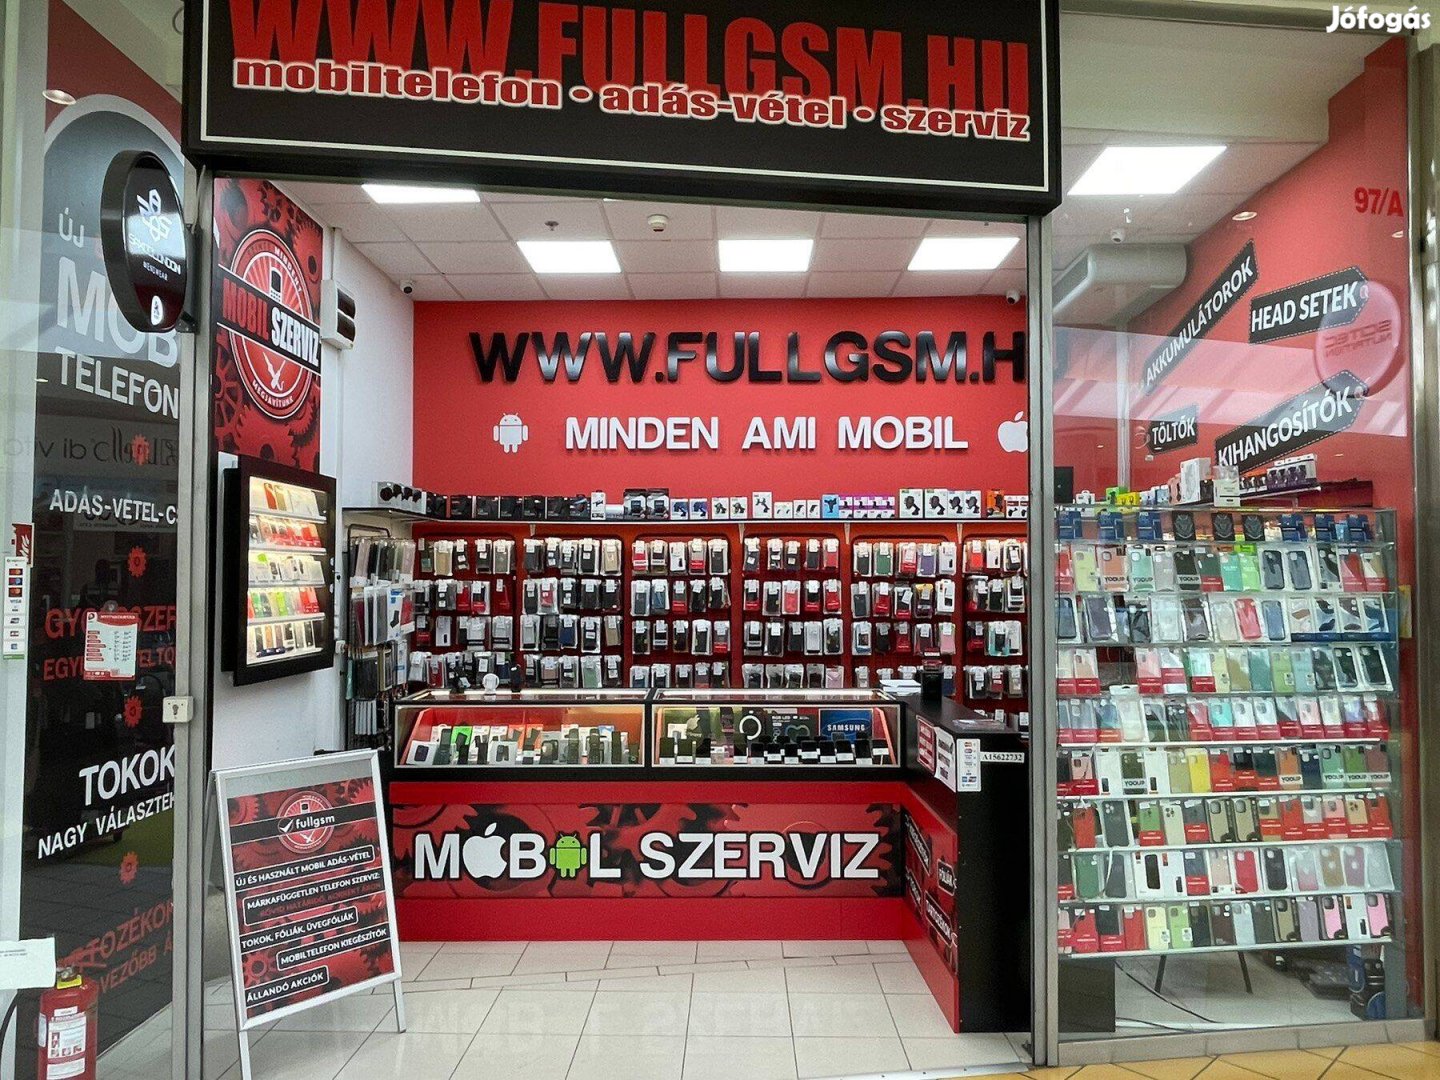 Értékesitői állás dunakeszi Auchanba található GSM boltba